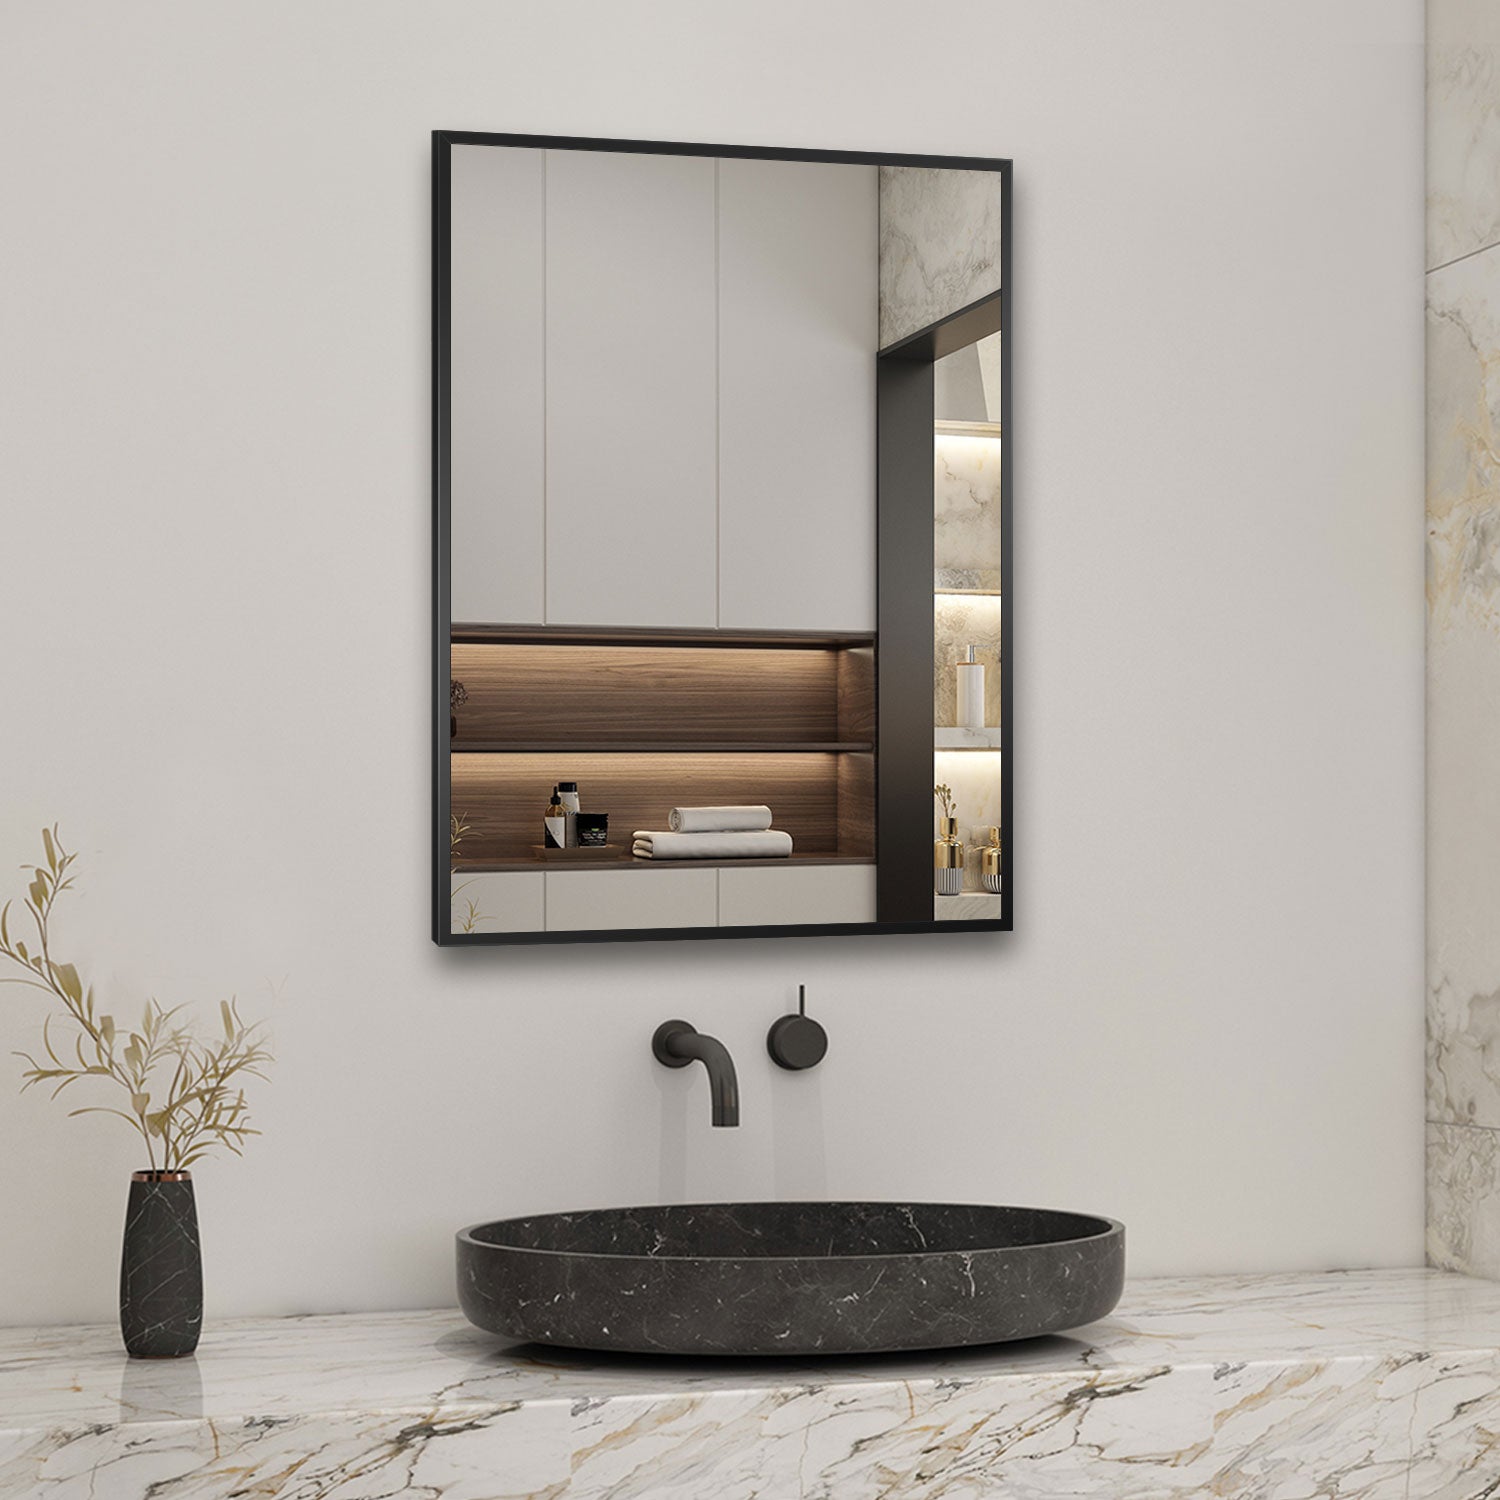 Aica Miroir Mural de Salle de Bain Rectangle noir/doré 50 x70/60x80cm, cadre en aluminium miroir pour Salle de Bain + Salon + WC horizontal et vertical -Livraison gratuite